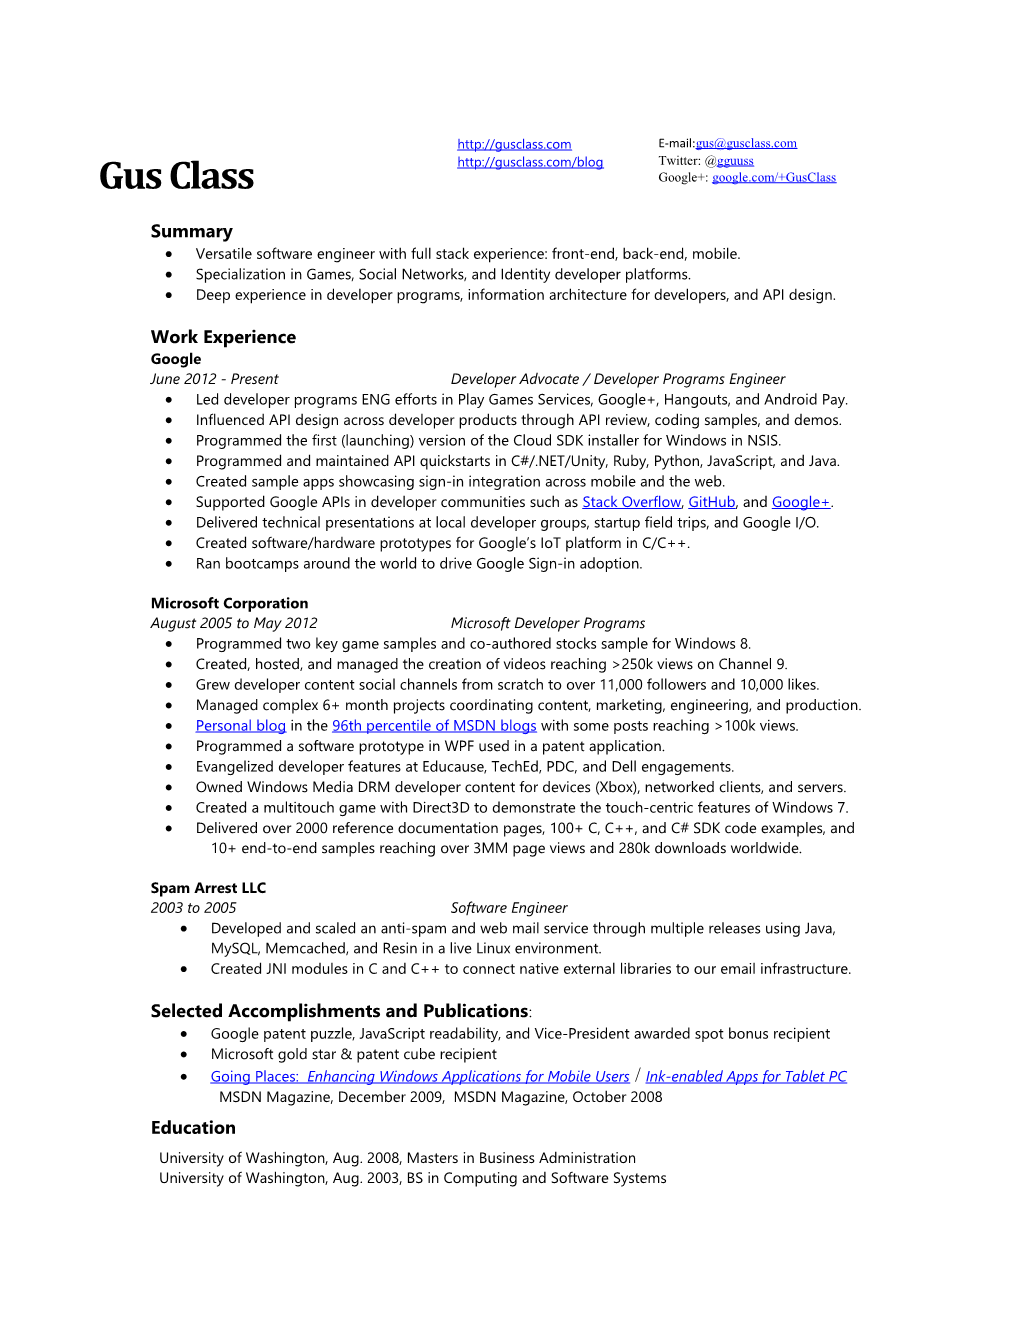 Resume Gregory Class Gguuss Gmail.Com